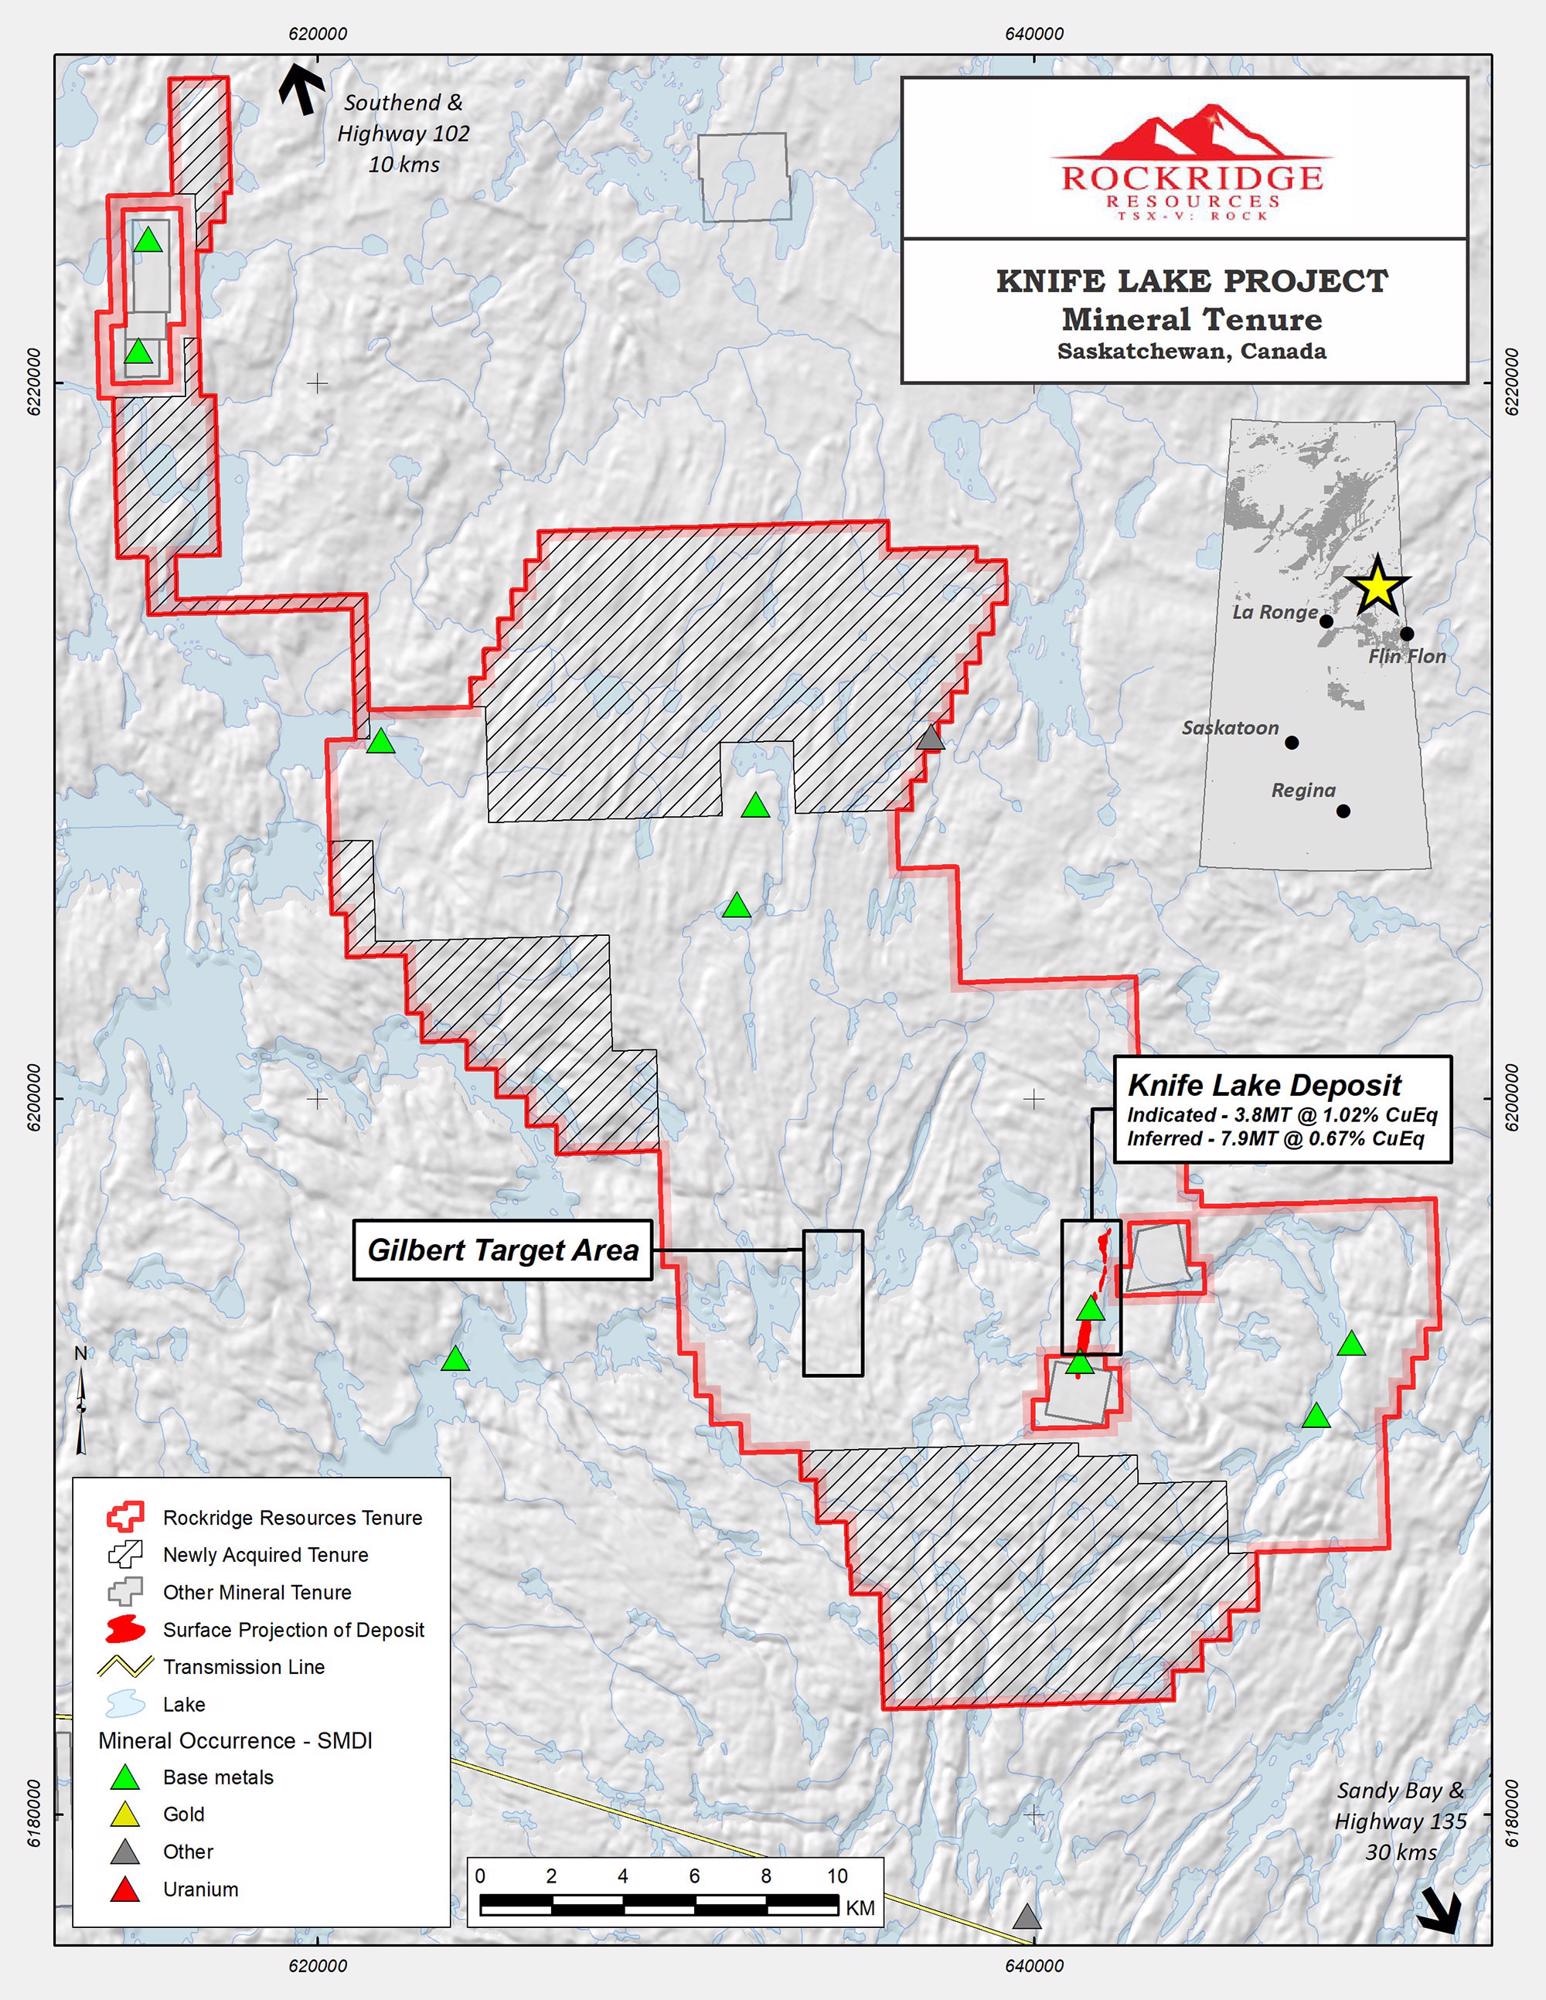 VTEM Geophysical Program Concludes at Rockridge’s Knife Lake Copper Project.